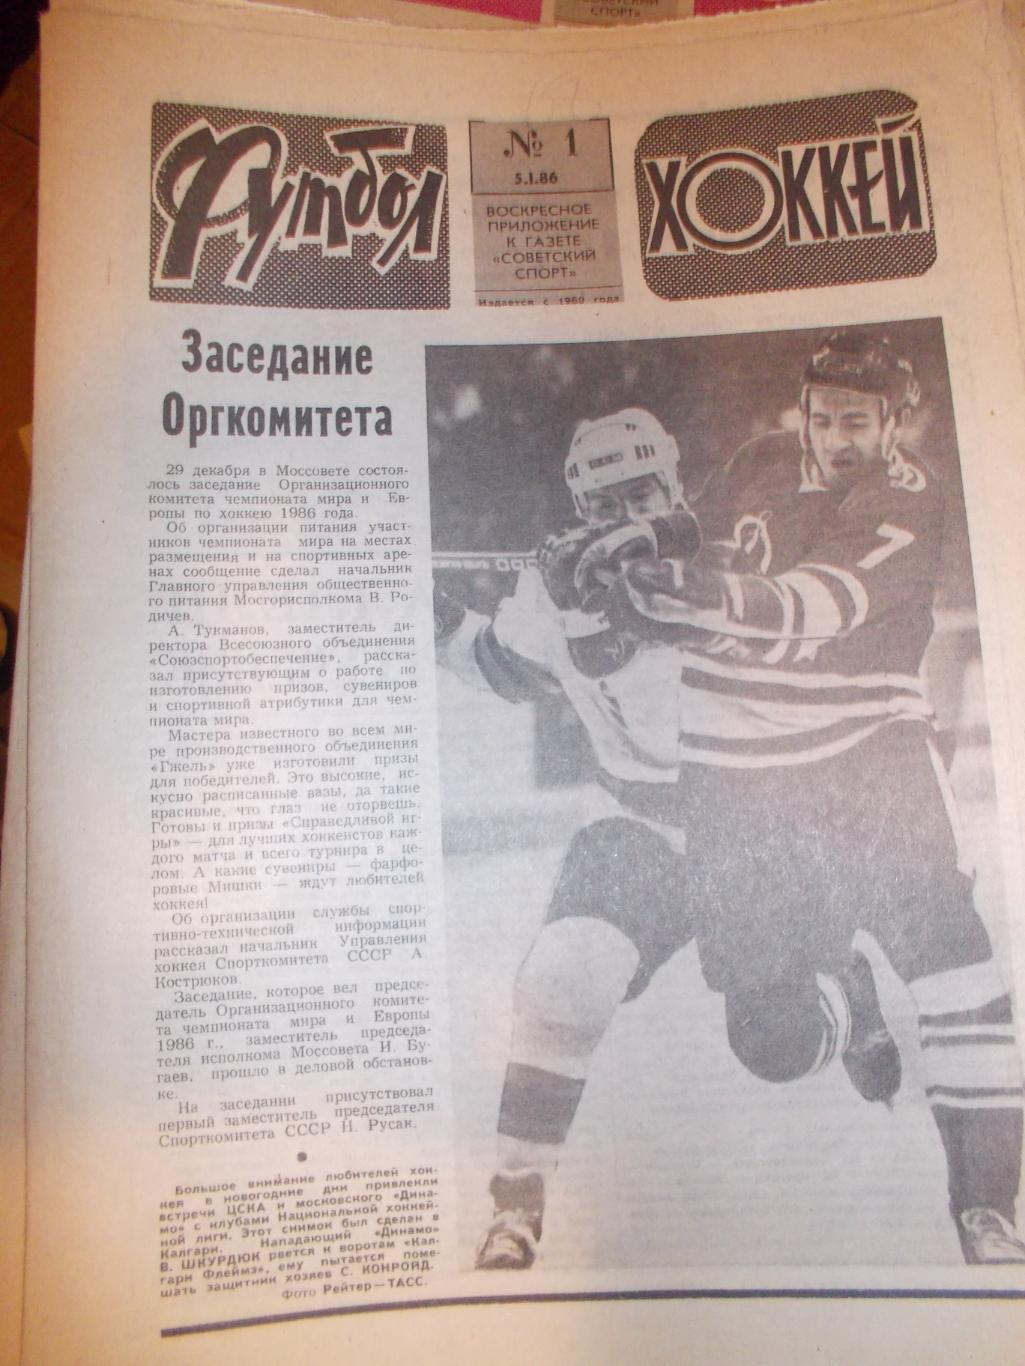 Еженедельник Футбол-Хоккей,1986 полный комплек.